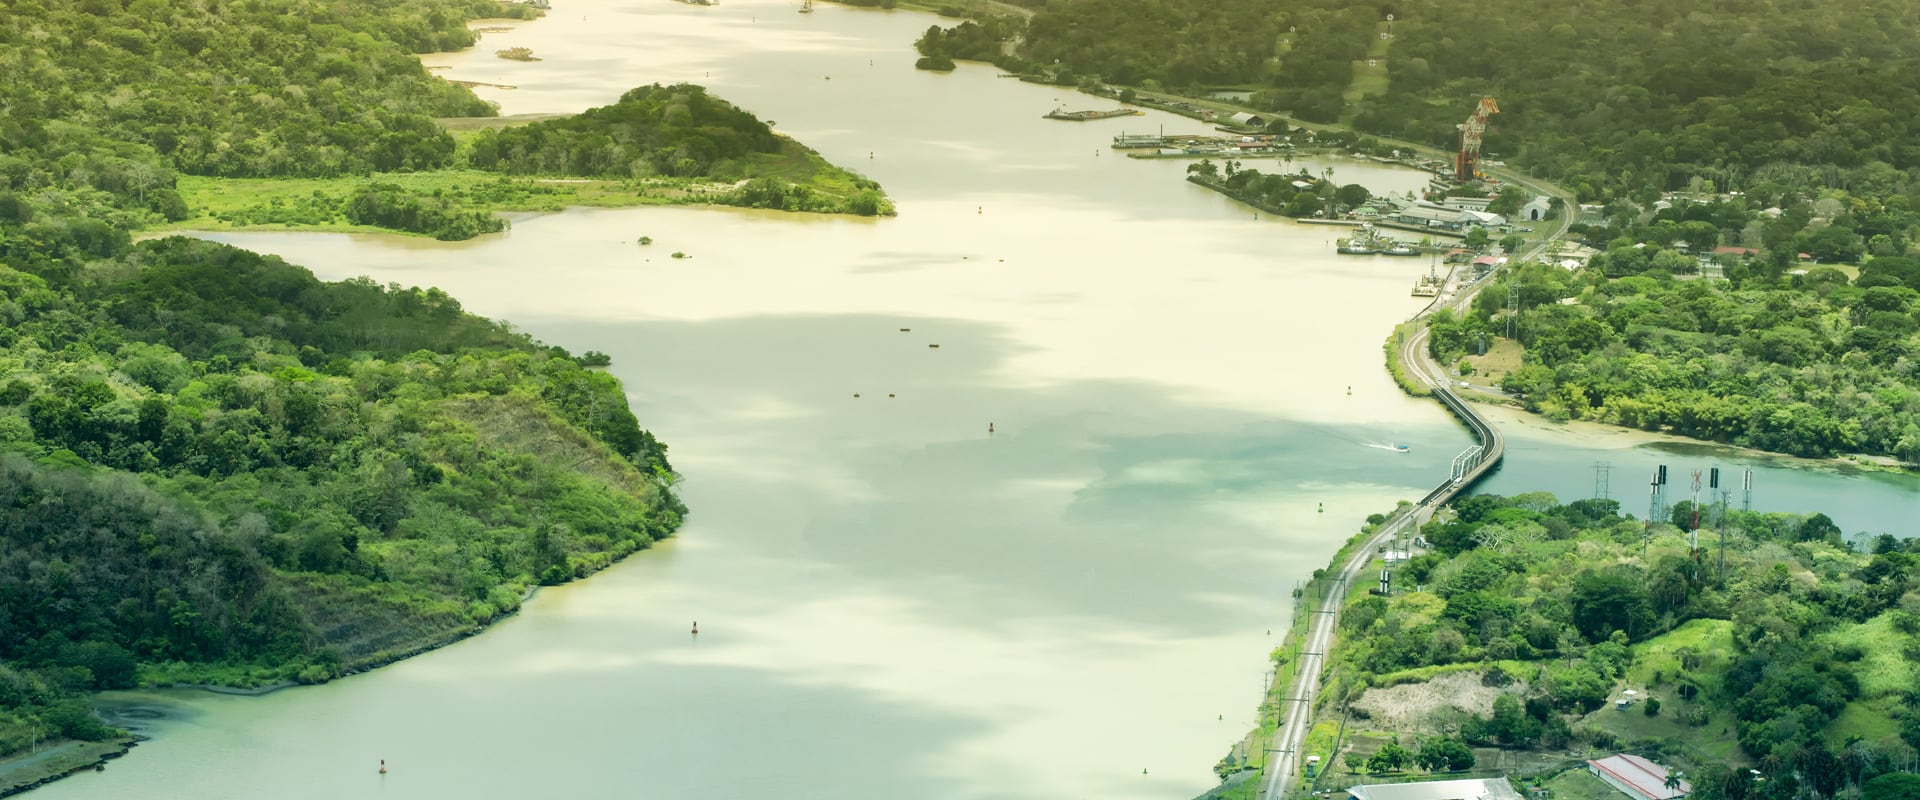 Crociere Avventura nel Canale di Panama